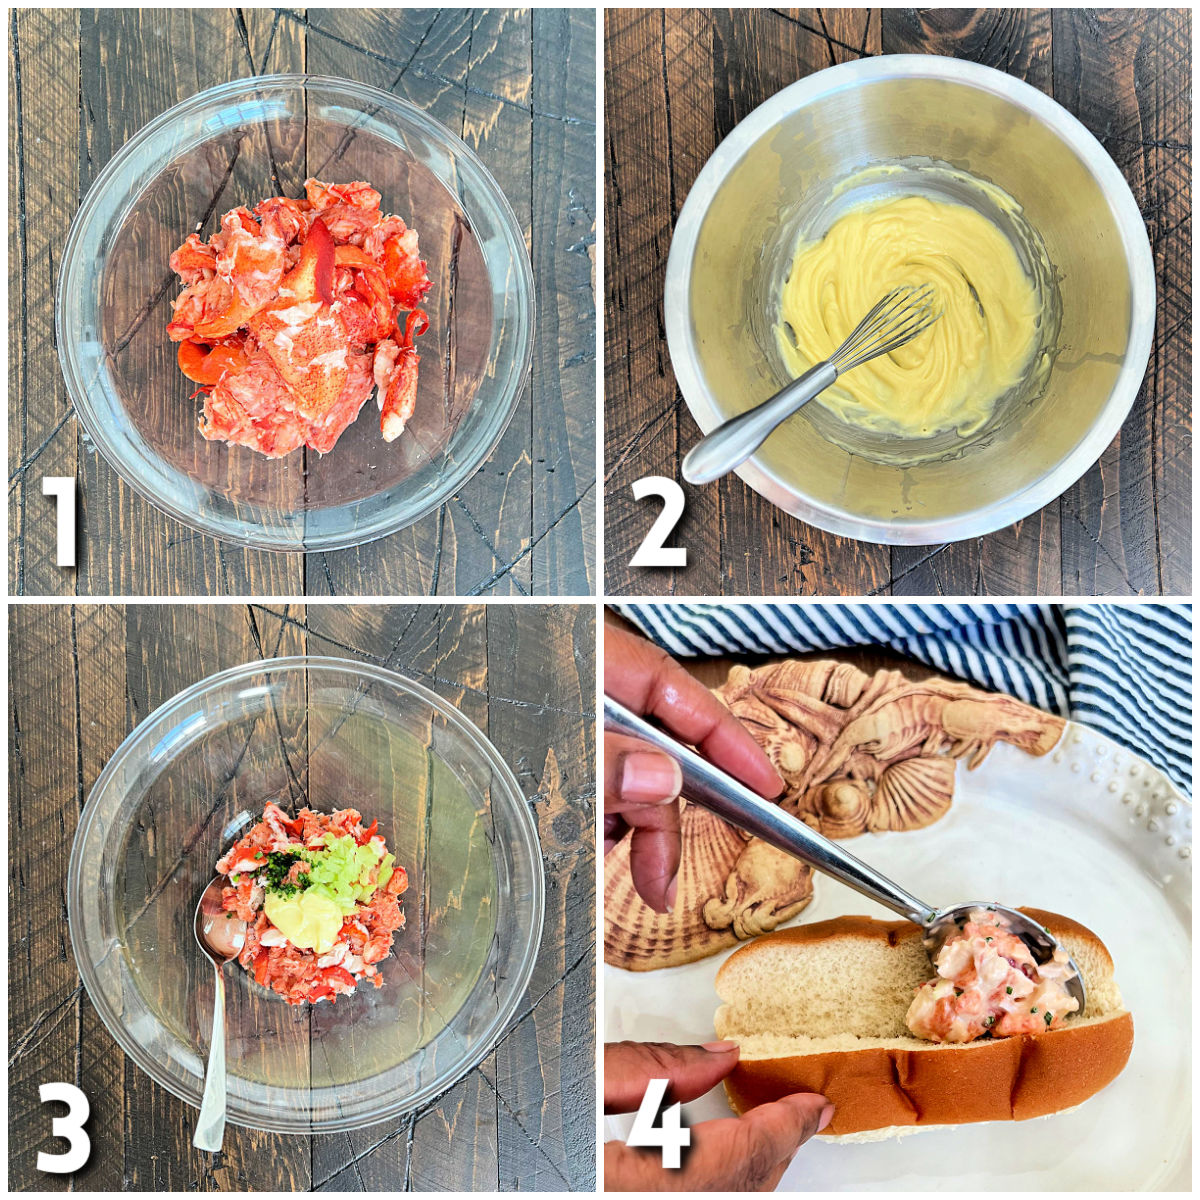 Steps for making lobster rolls.